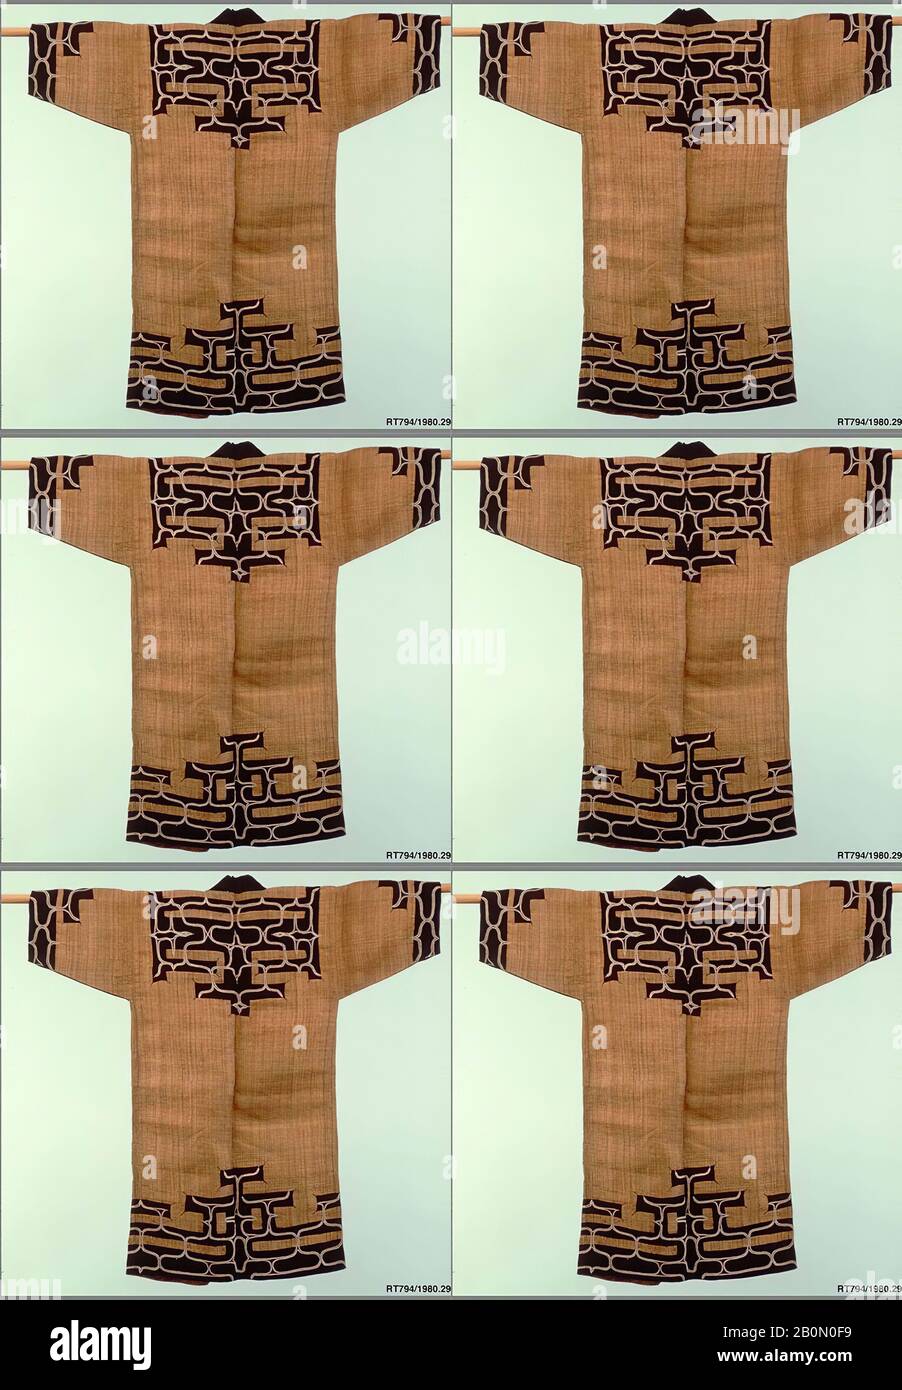 Ainu Robe, Giappone, periodo Meiji (1868–1912), Data 19th secolo, Giappone, fibra di corteccia di Elm con applicazione di tovato tinto indaco (atsushi), 48 x 25 pollici. (121,92 x 63,50 cm), Textiles-Costumi Foto Stock